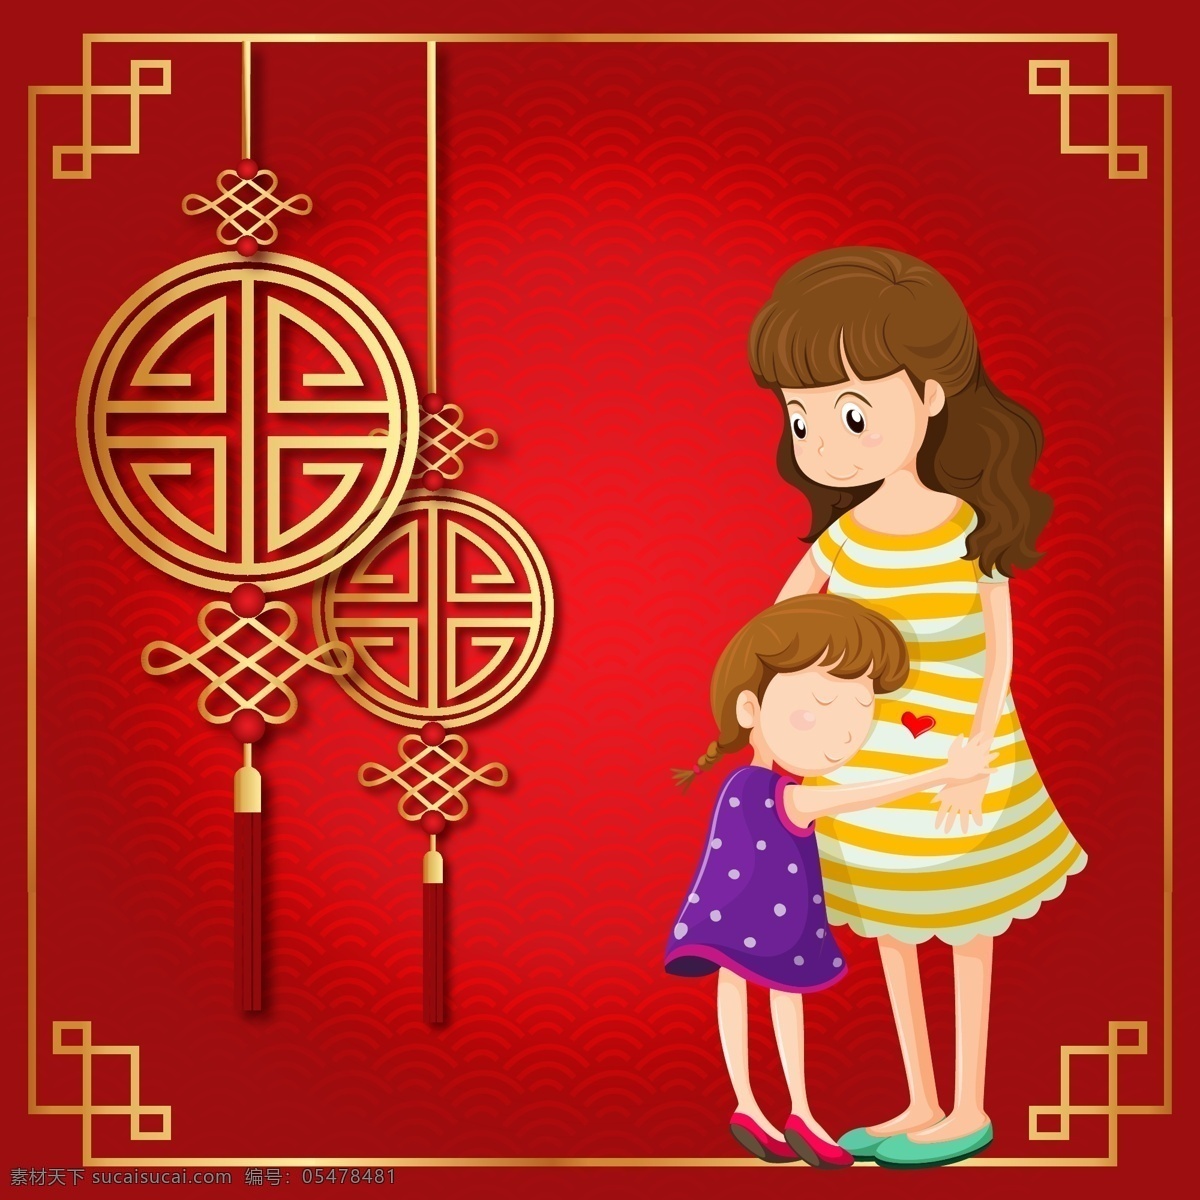 春节 矢量 手绘 中国结 妈妈 幸福 家庭 女儿 一家人 老人 灯笼 回家 团聚 小孩子 回家过年 放鞭炮 大红